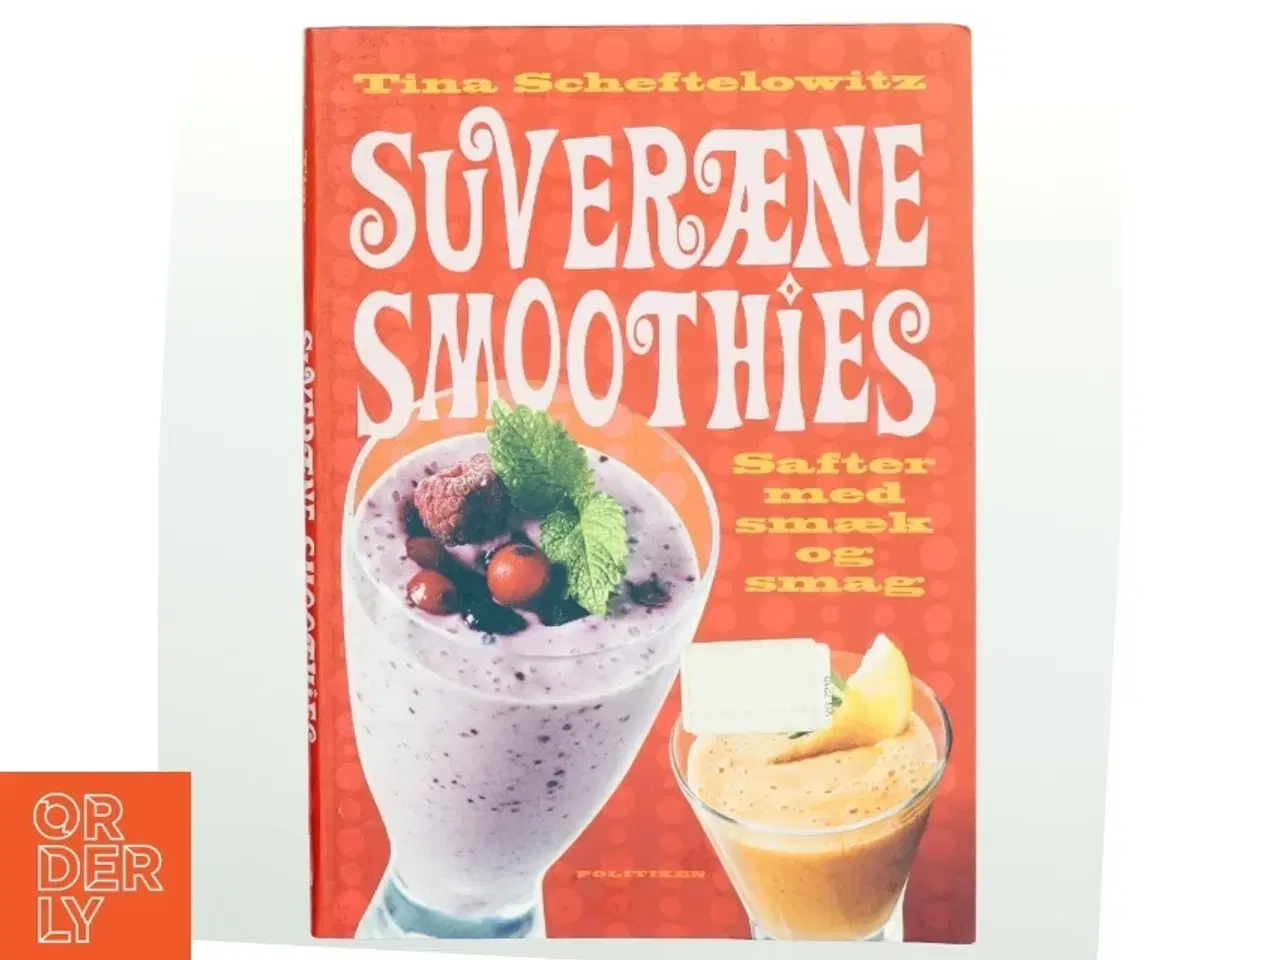 Billede 1 - Suveræne smoothies : safter med smæk og smag af Tina Scheftelowitz (Bog)